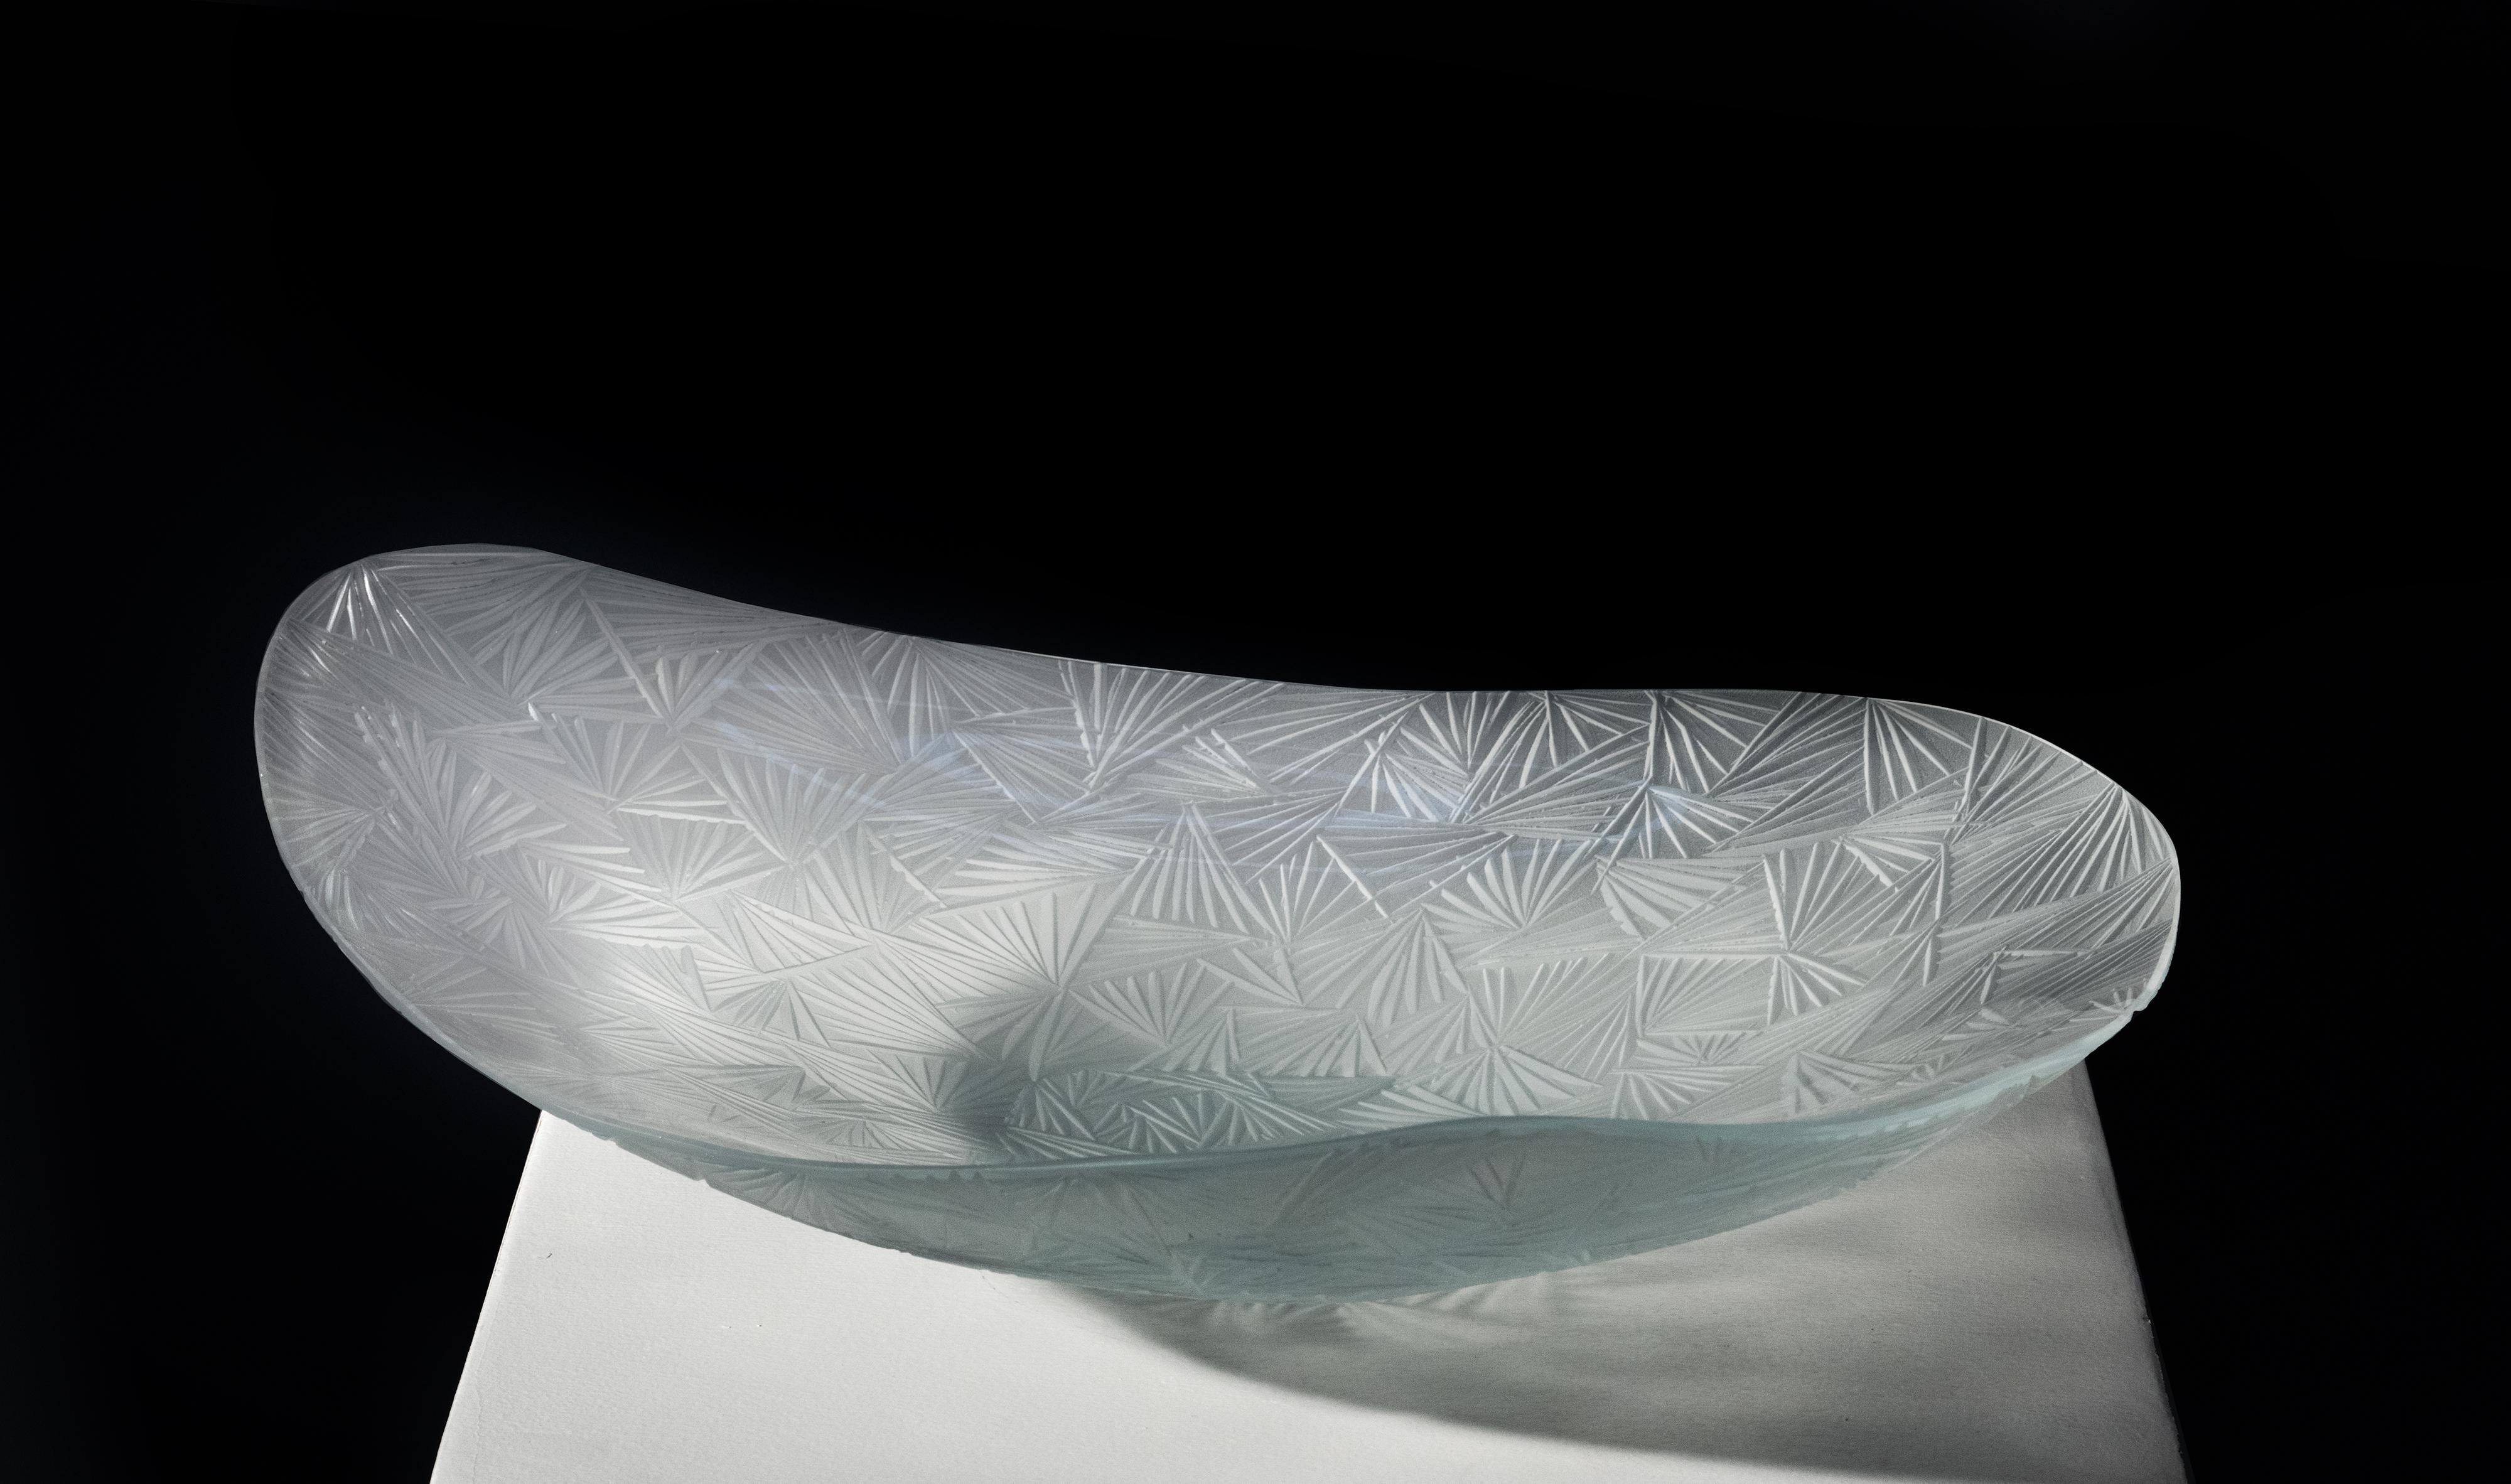 Kollektion 2021 der künstlerischen Schalen von Ghirò Studio (Mailand).
Innovatives Design, feine Handwerkskunst und ein ausgeprägter künstlerischer Sinn machen diese Kreation nicht nur zu einer Schale, sondern zu einer echten Kunstskulptur. Das